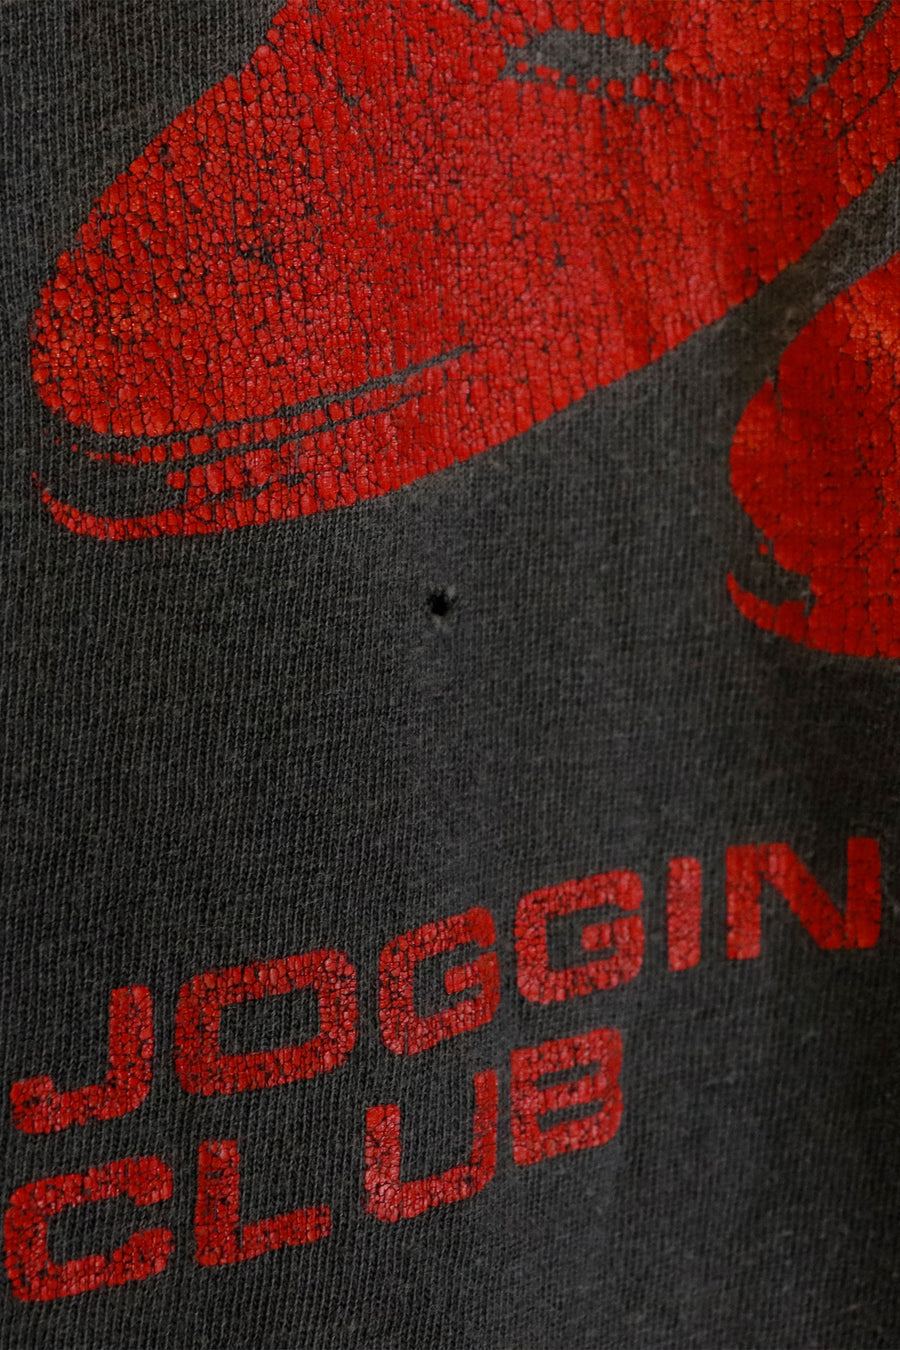 Vintage Adidas Jogging Club Graphic T Shirt Sz M